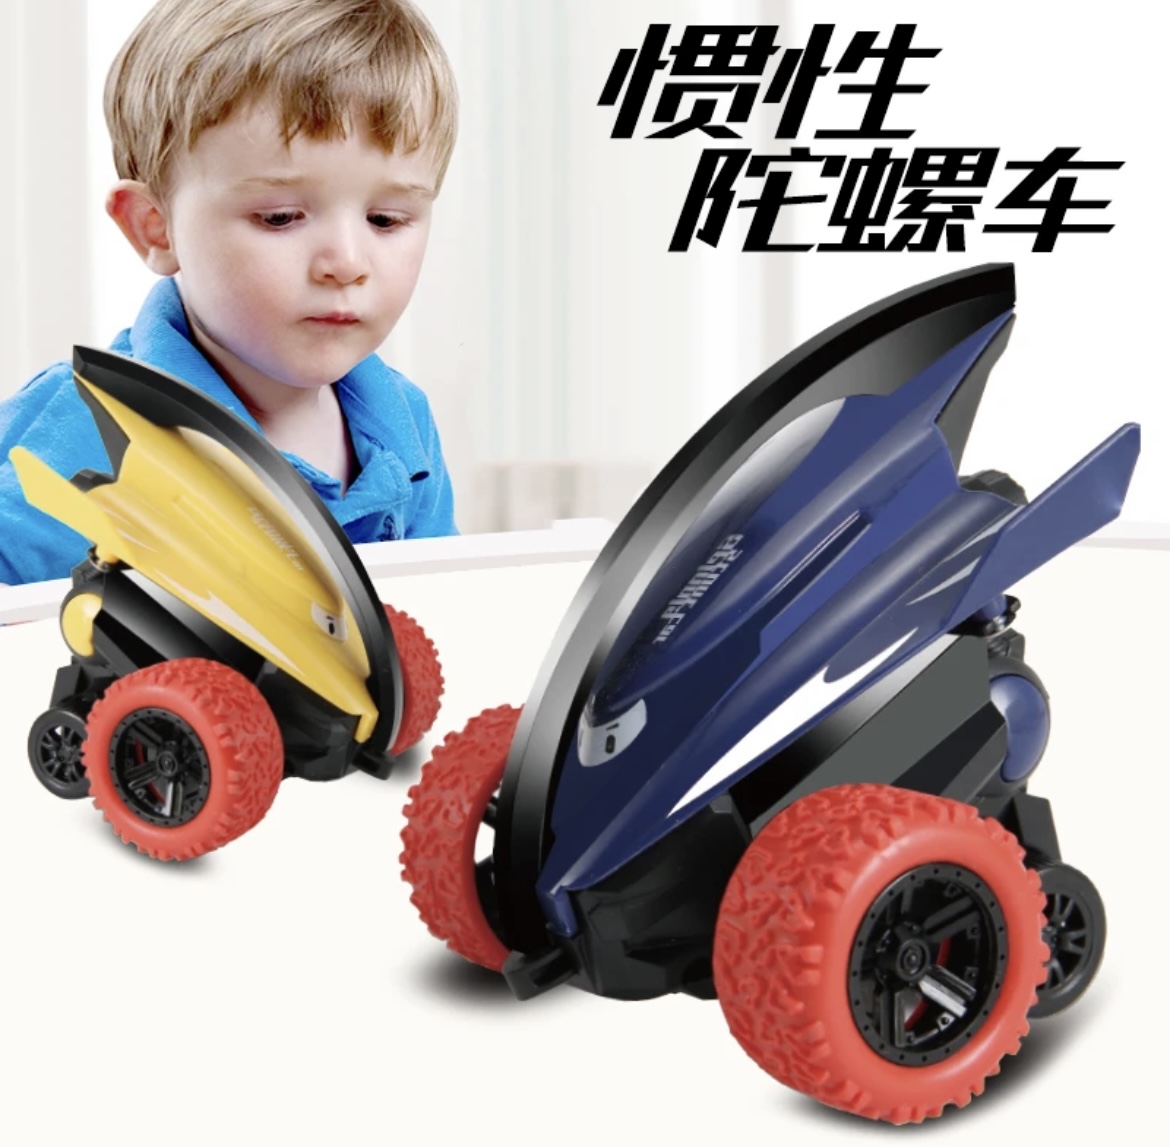 儿童益智玩具3-6岁男孩耐摔撞击360旋转特技惯性车0-3岁宝宝礼物